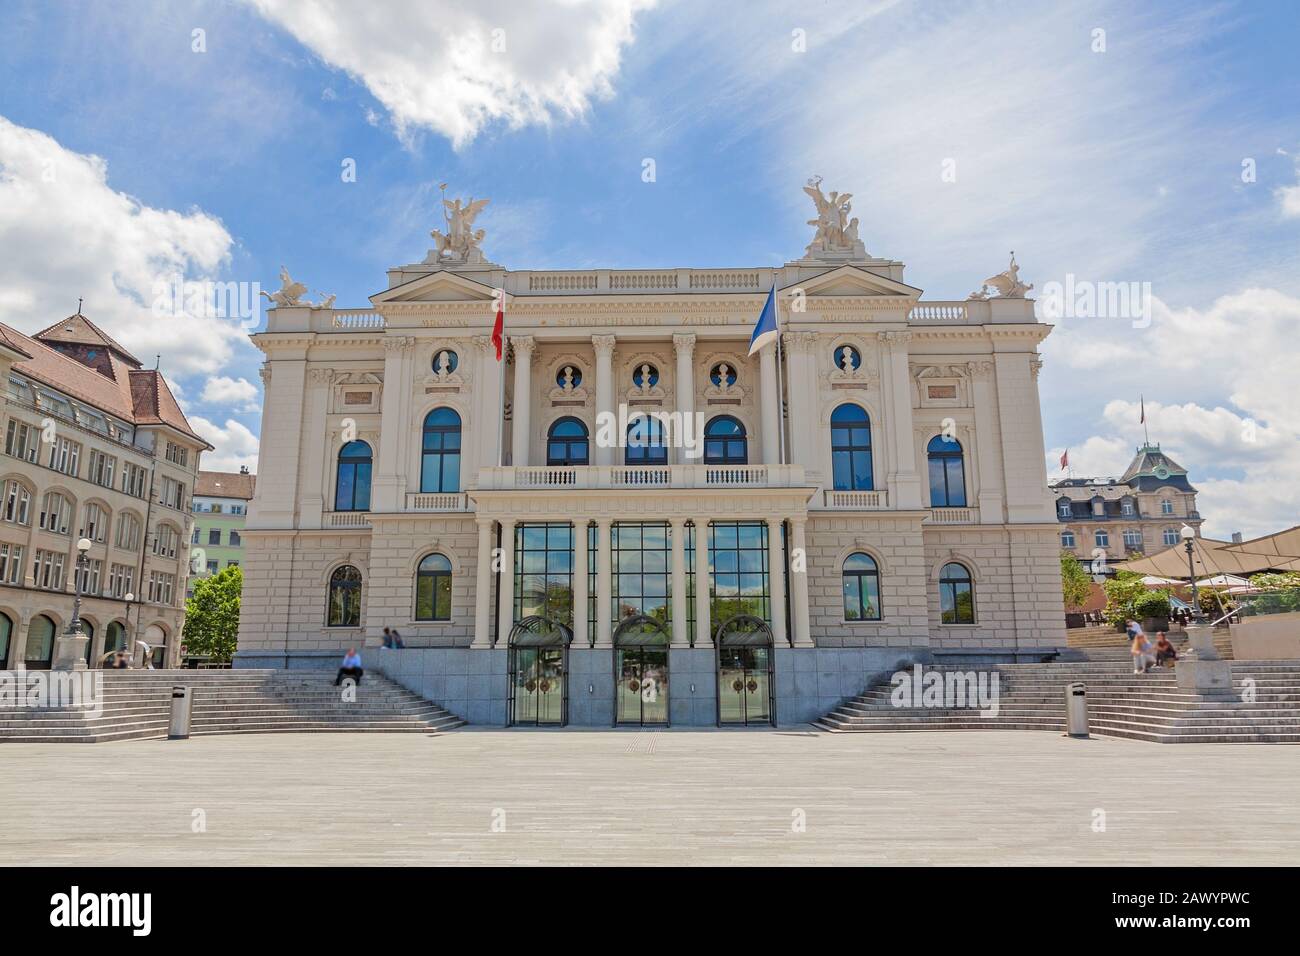 Edificio dell'Opera di Zurigo (Opernhaus Zuerich) - ingresso, vista da Sechselautenplatz Foto Stock